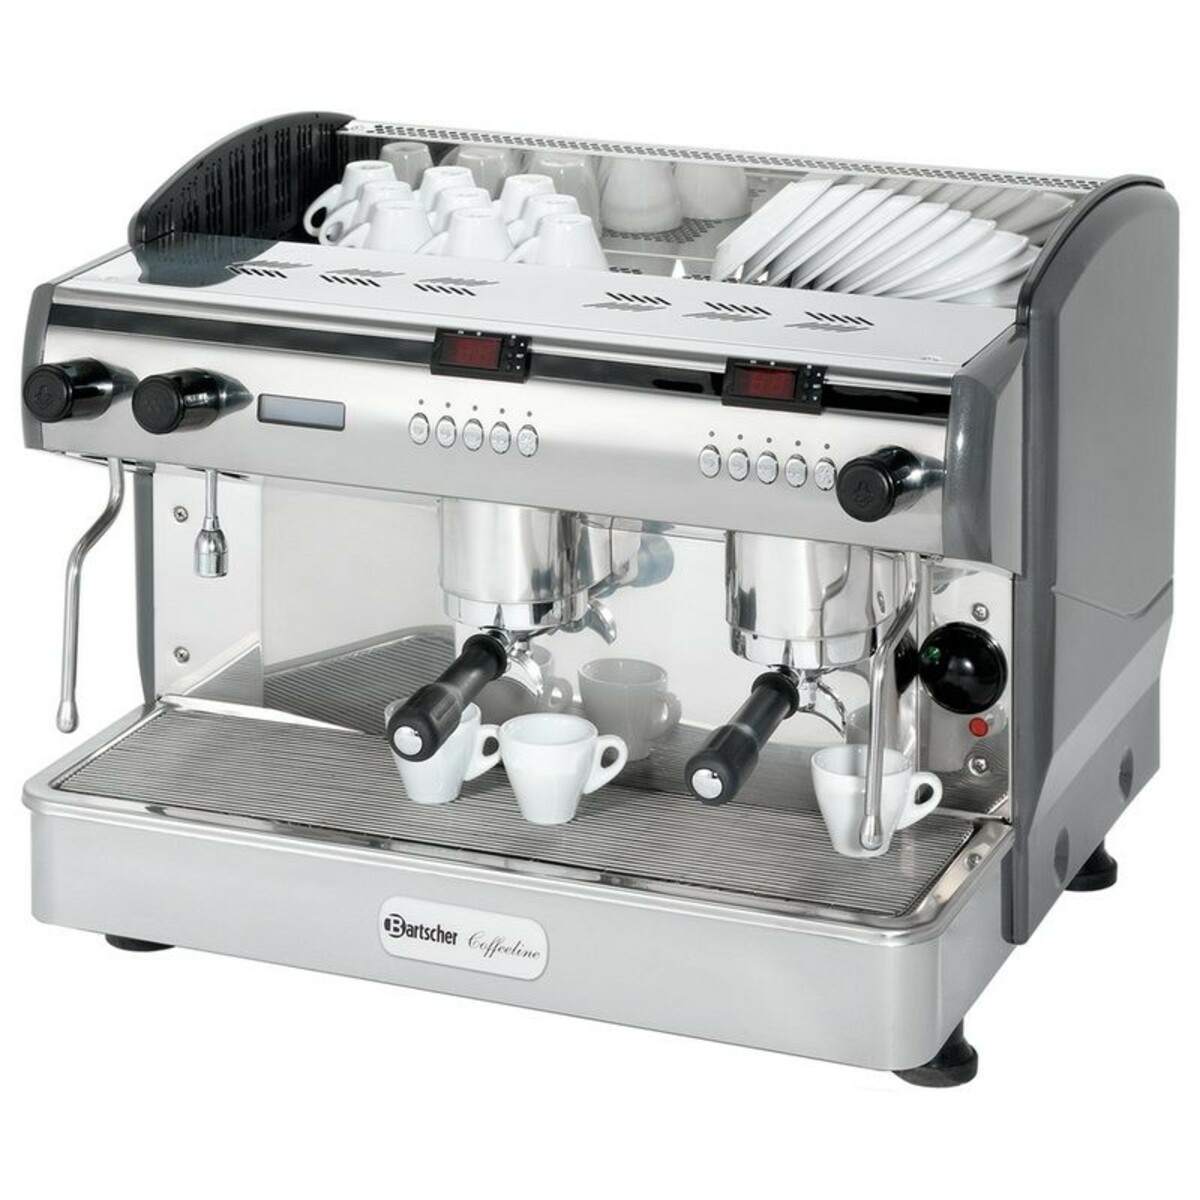 Machine café Coffeeline G2 Bartscher